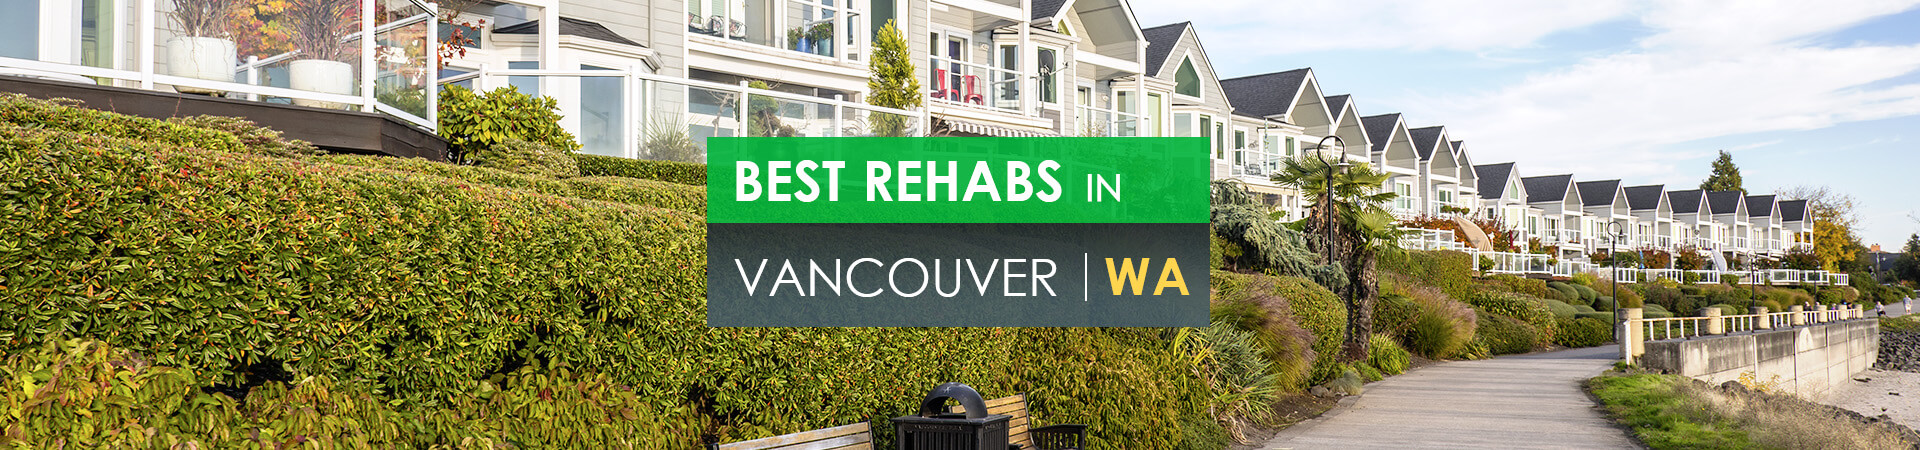 Best rehabs in Vancouver, Wa